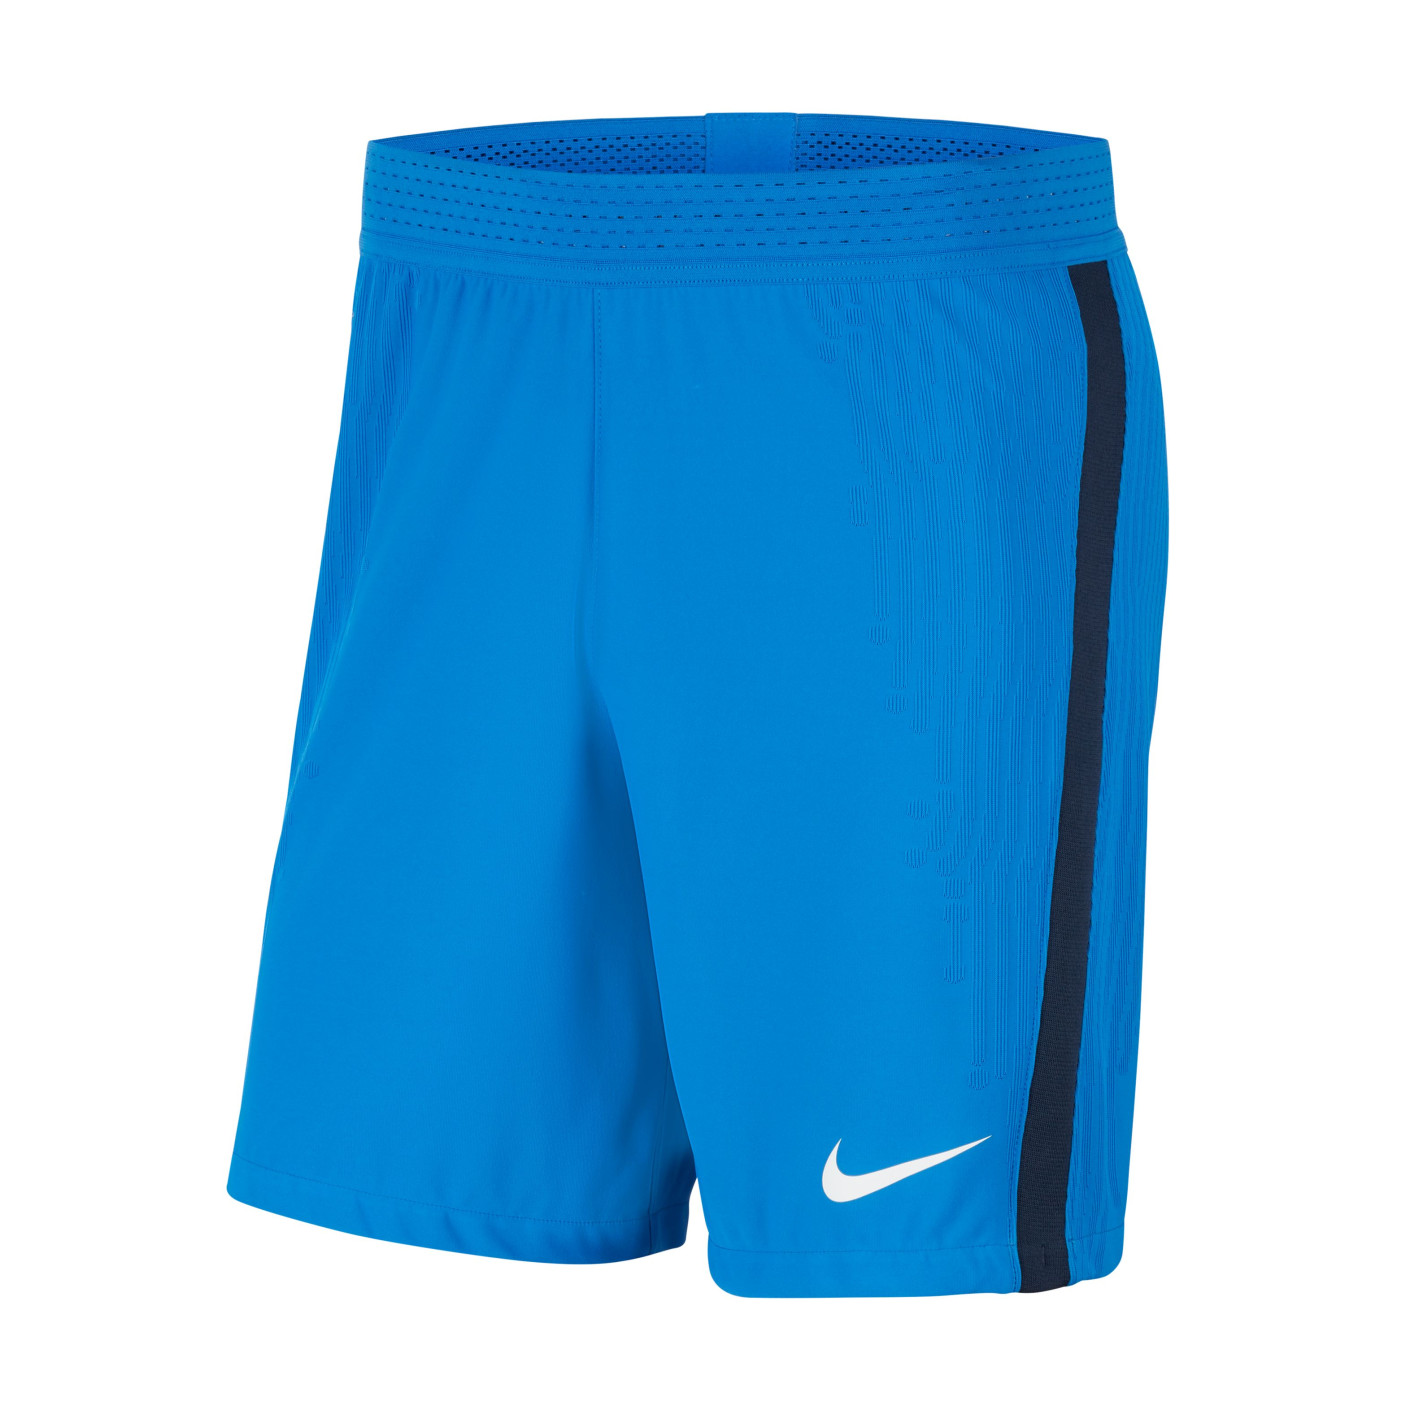 Nike VaporKnit III Trainingsbroekje Blauw